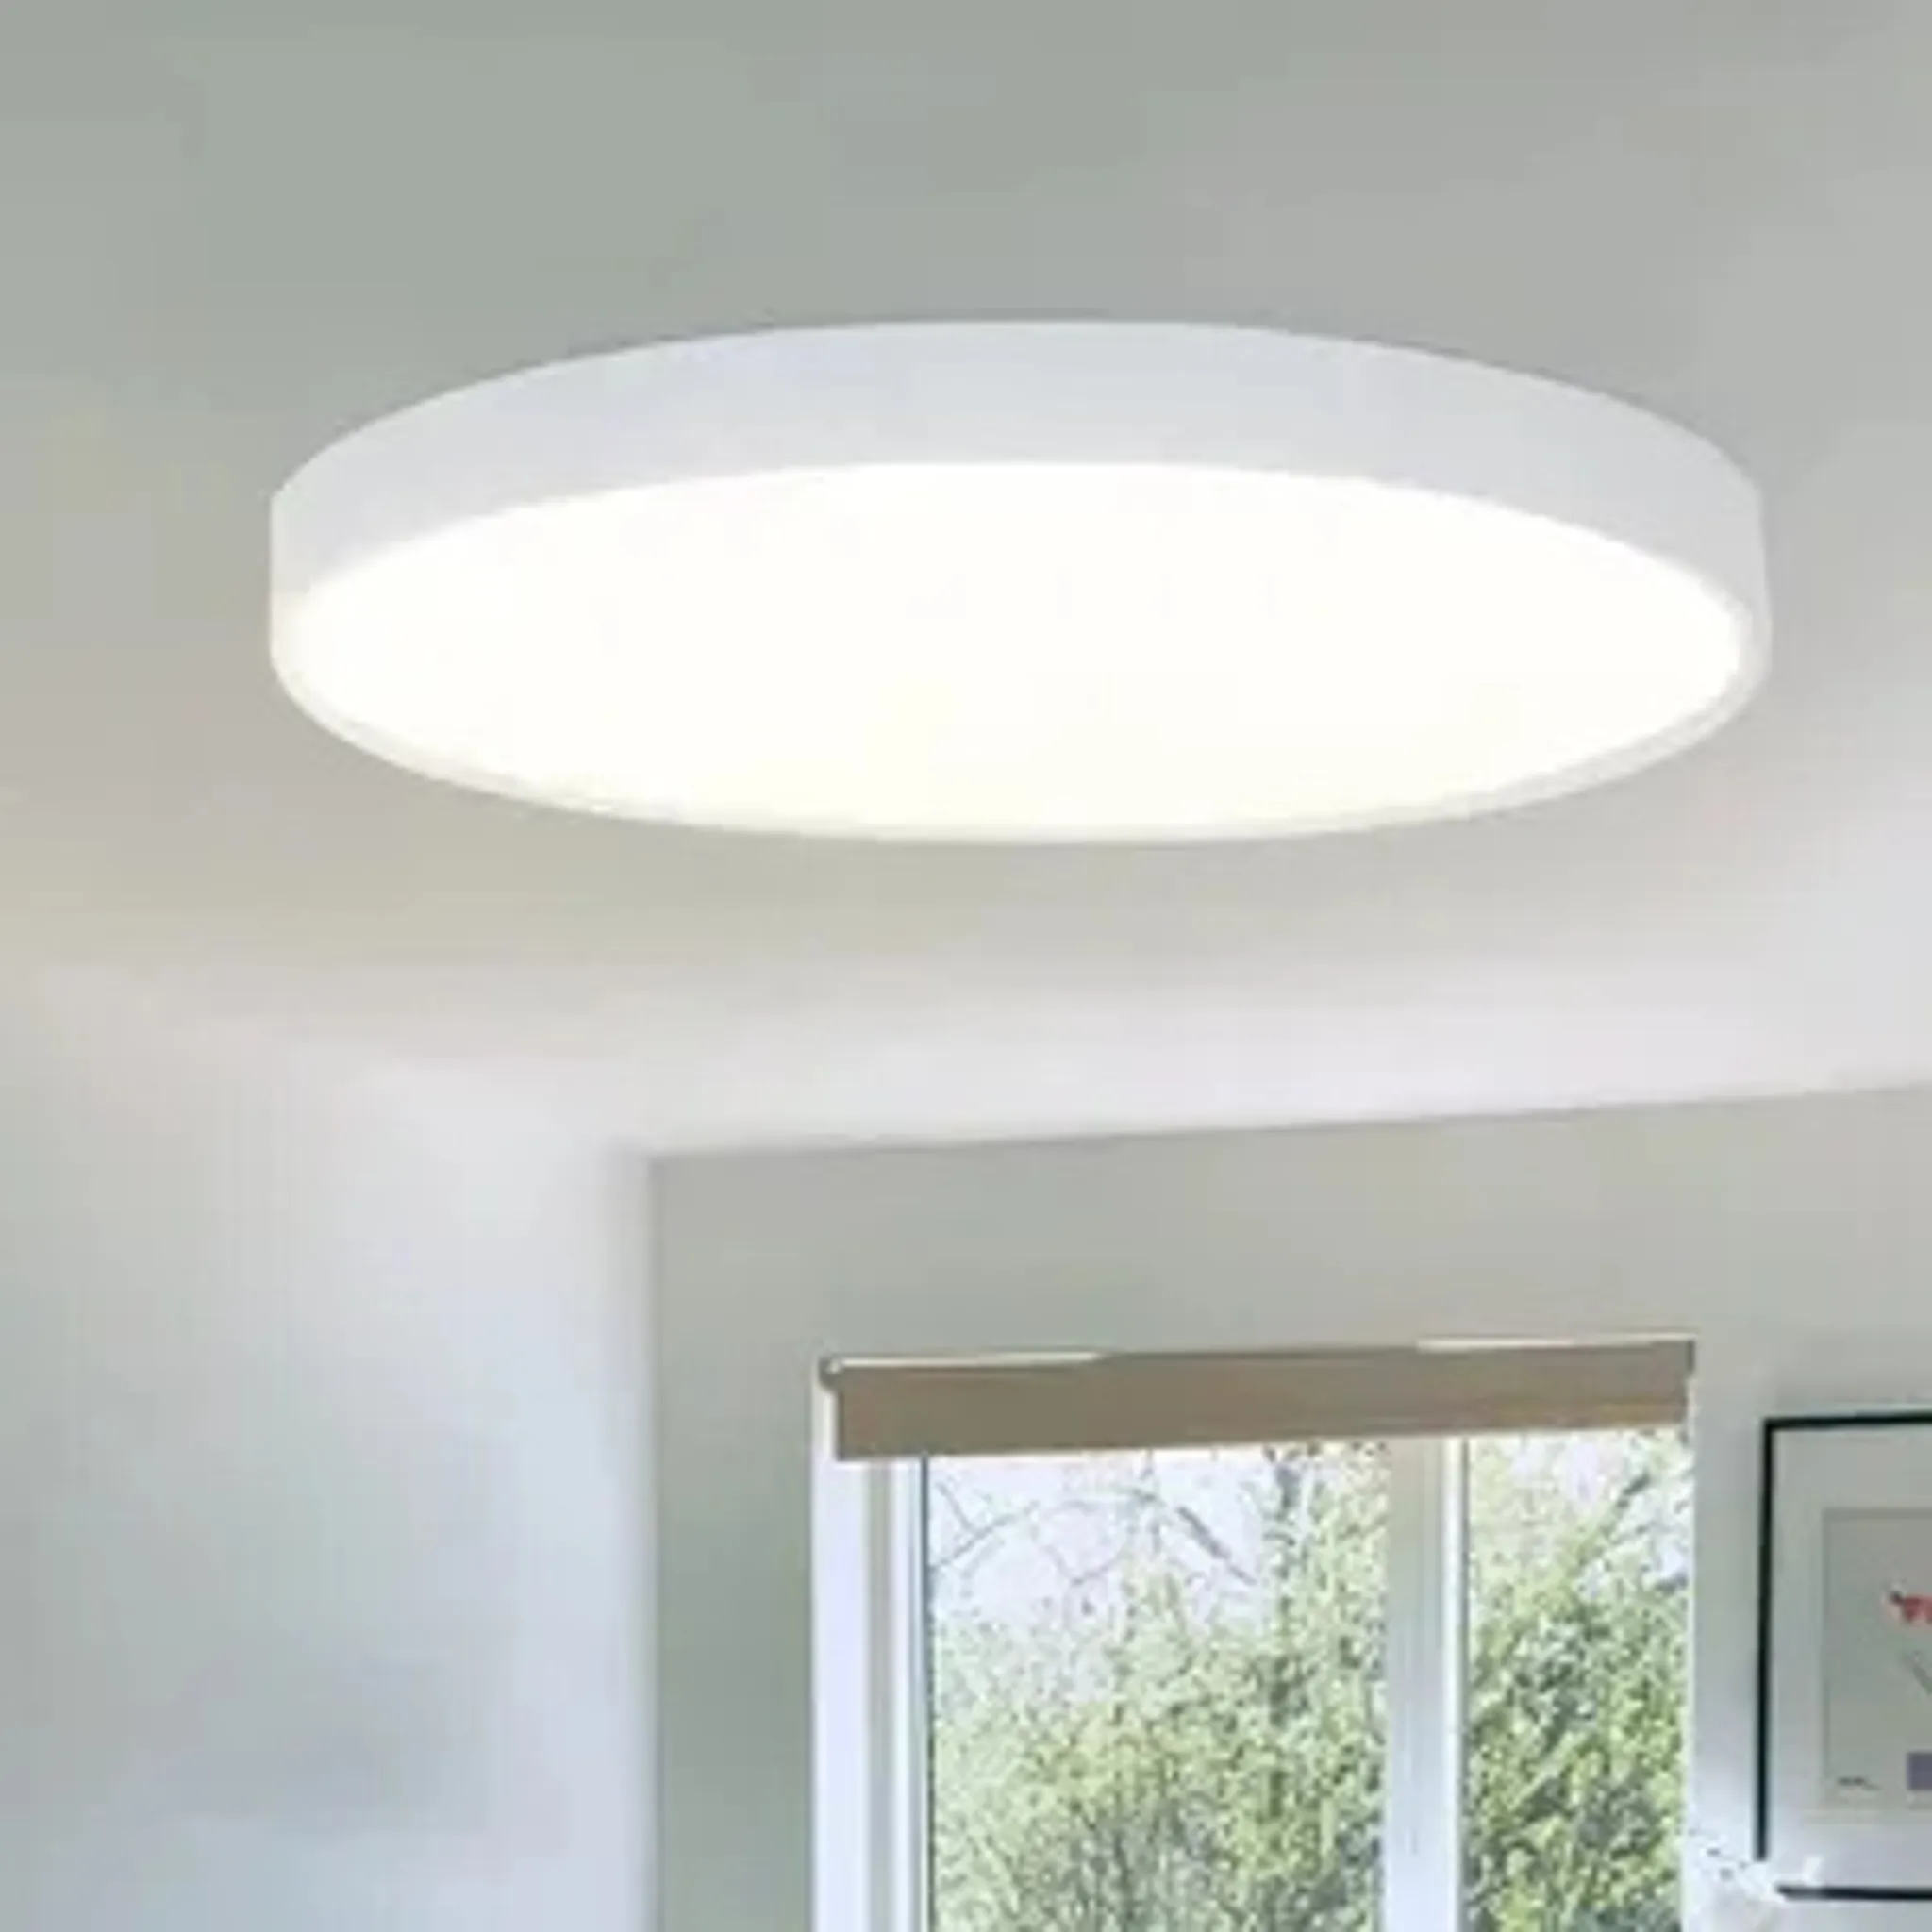 ZMH LED Deckenleuchte Flach Deckenlampe Weiß